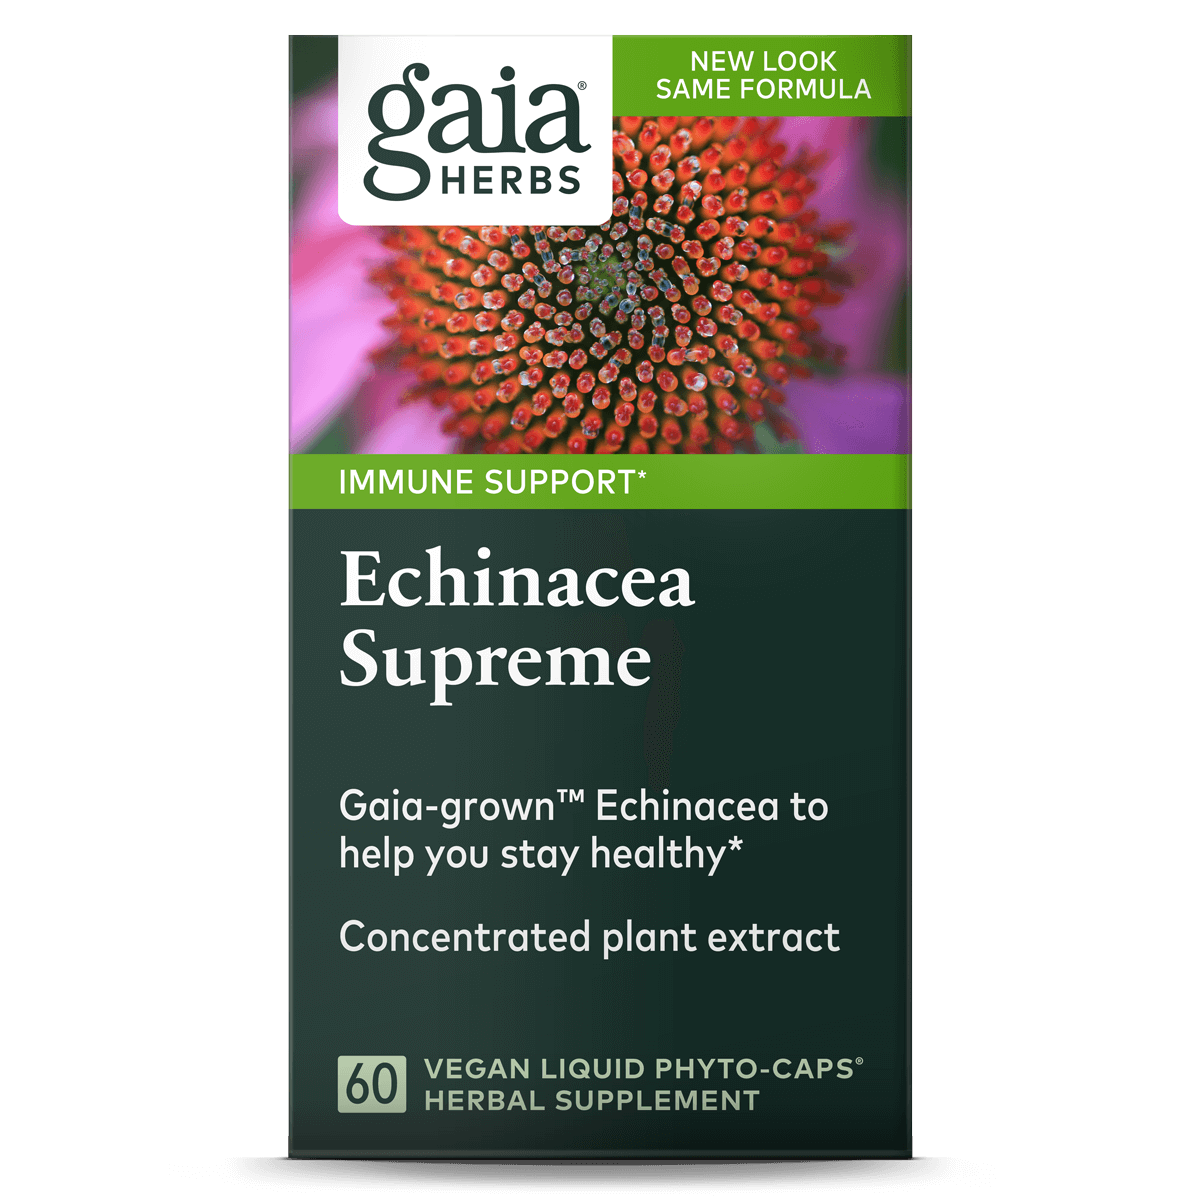 Gaia Herbs - Echinacea Supreme - RealLifeHealing